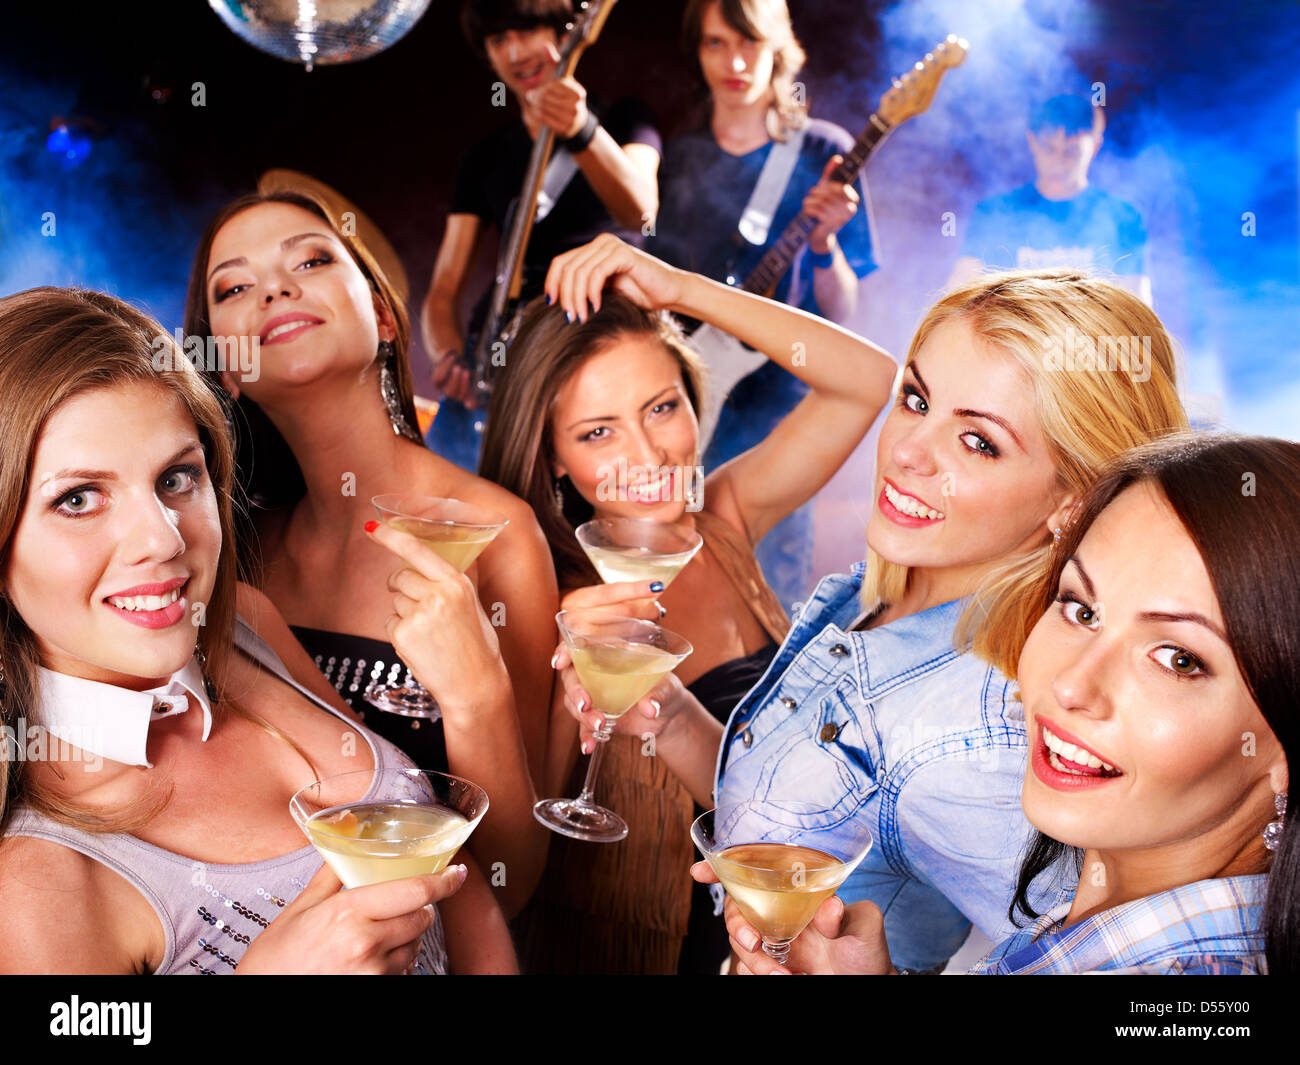 Woman on disco in night club. Stock Photo